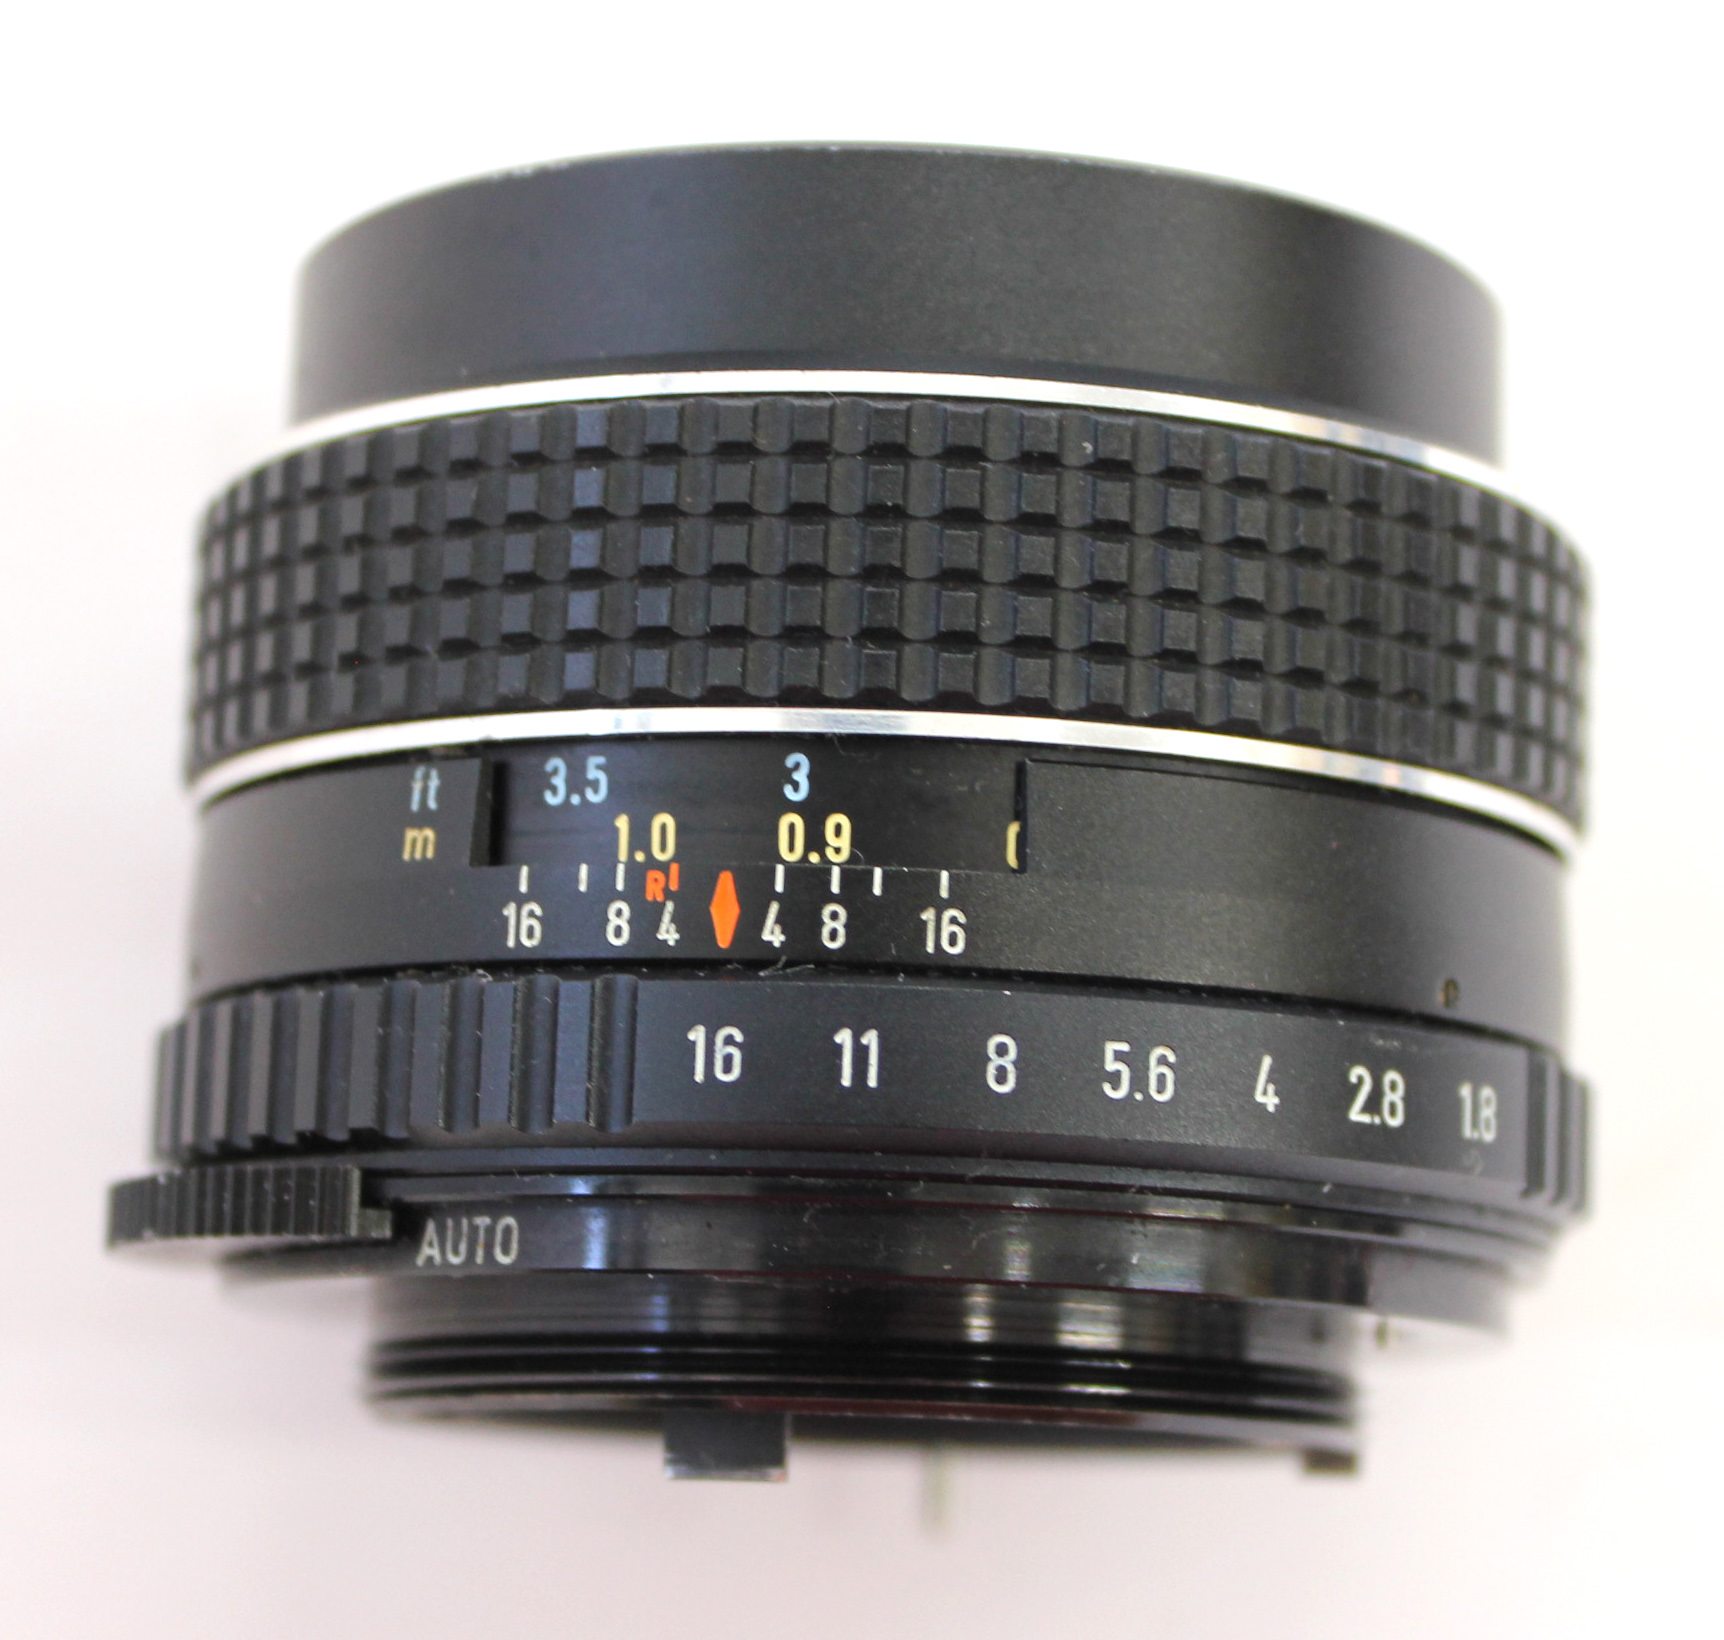 Asahi Pentax Spotmatic F SPF Camera w/ SMC Takumar 55mm F/1.8 from 